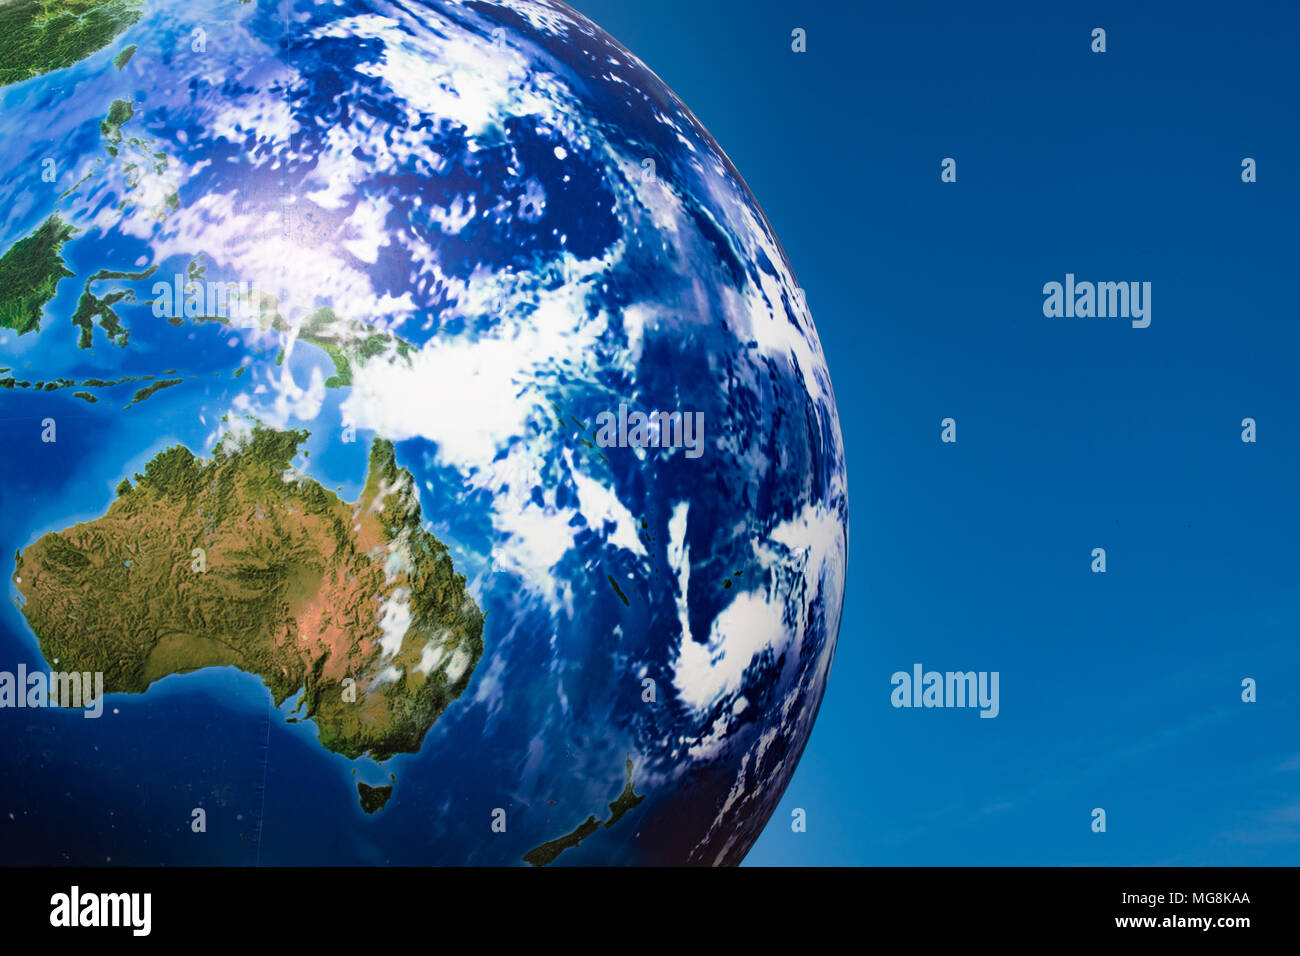 Earth Globus Abschnitt Australien Ozean und der südlichen Hemisphäre planet Kugel über blauen Himmel Platz kopieren Stockfoto